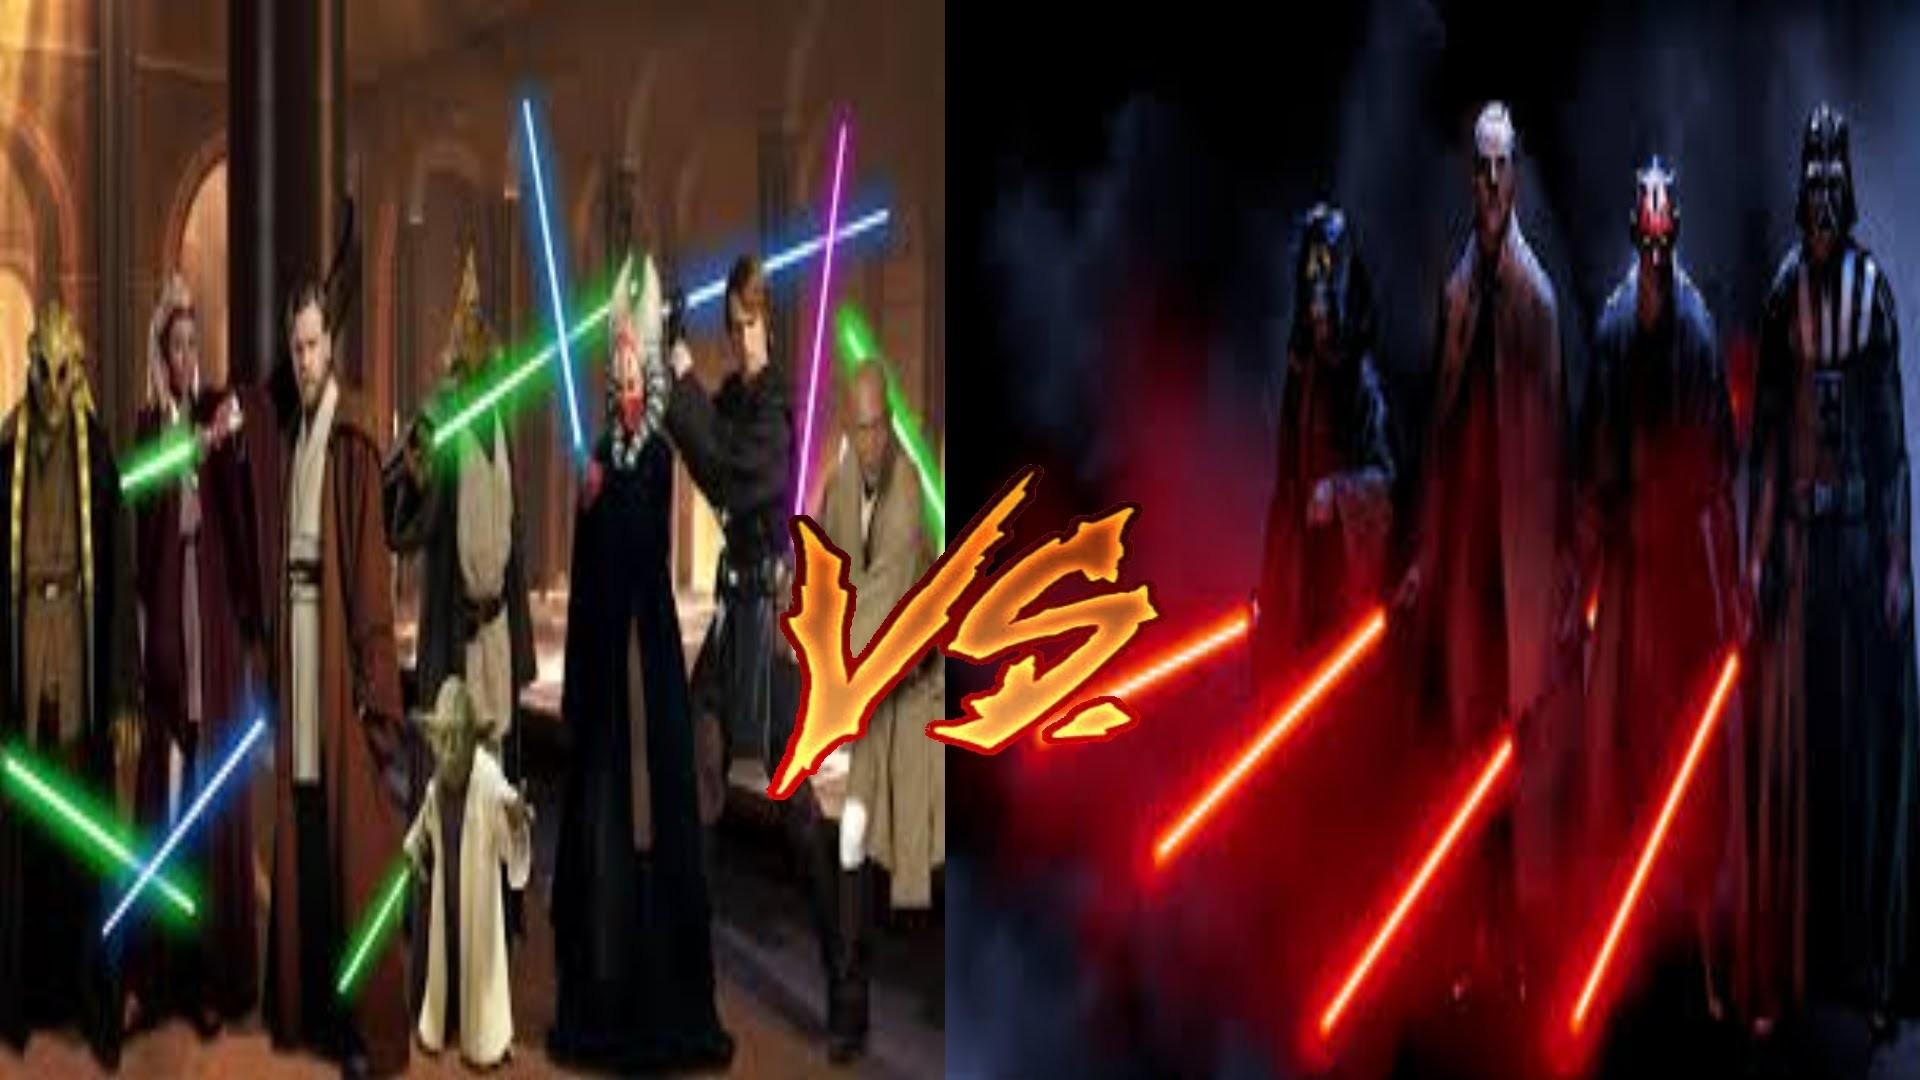 Sith vs Jedi Wallpaper